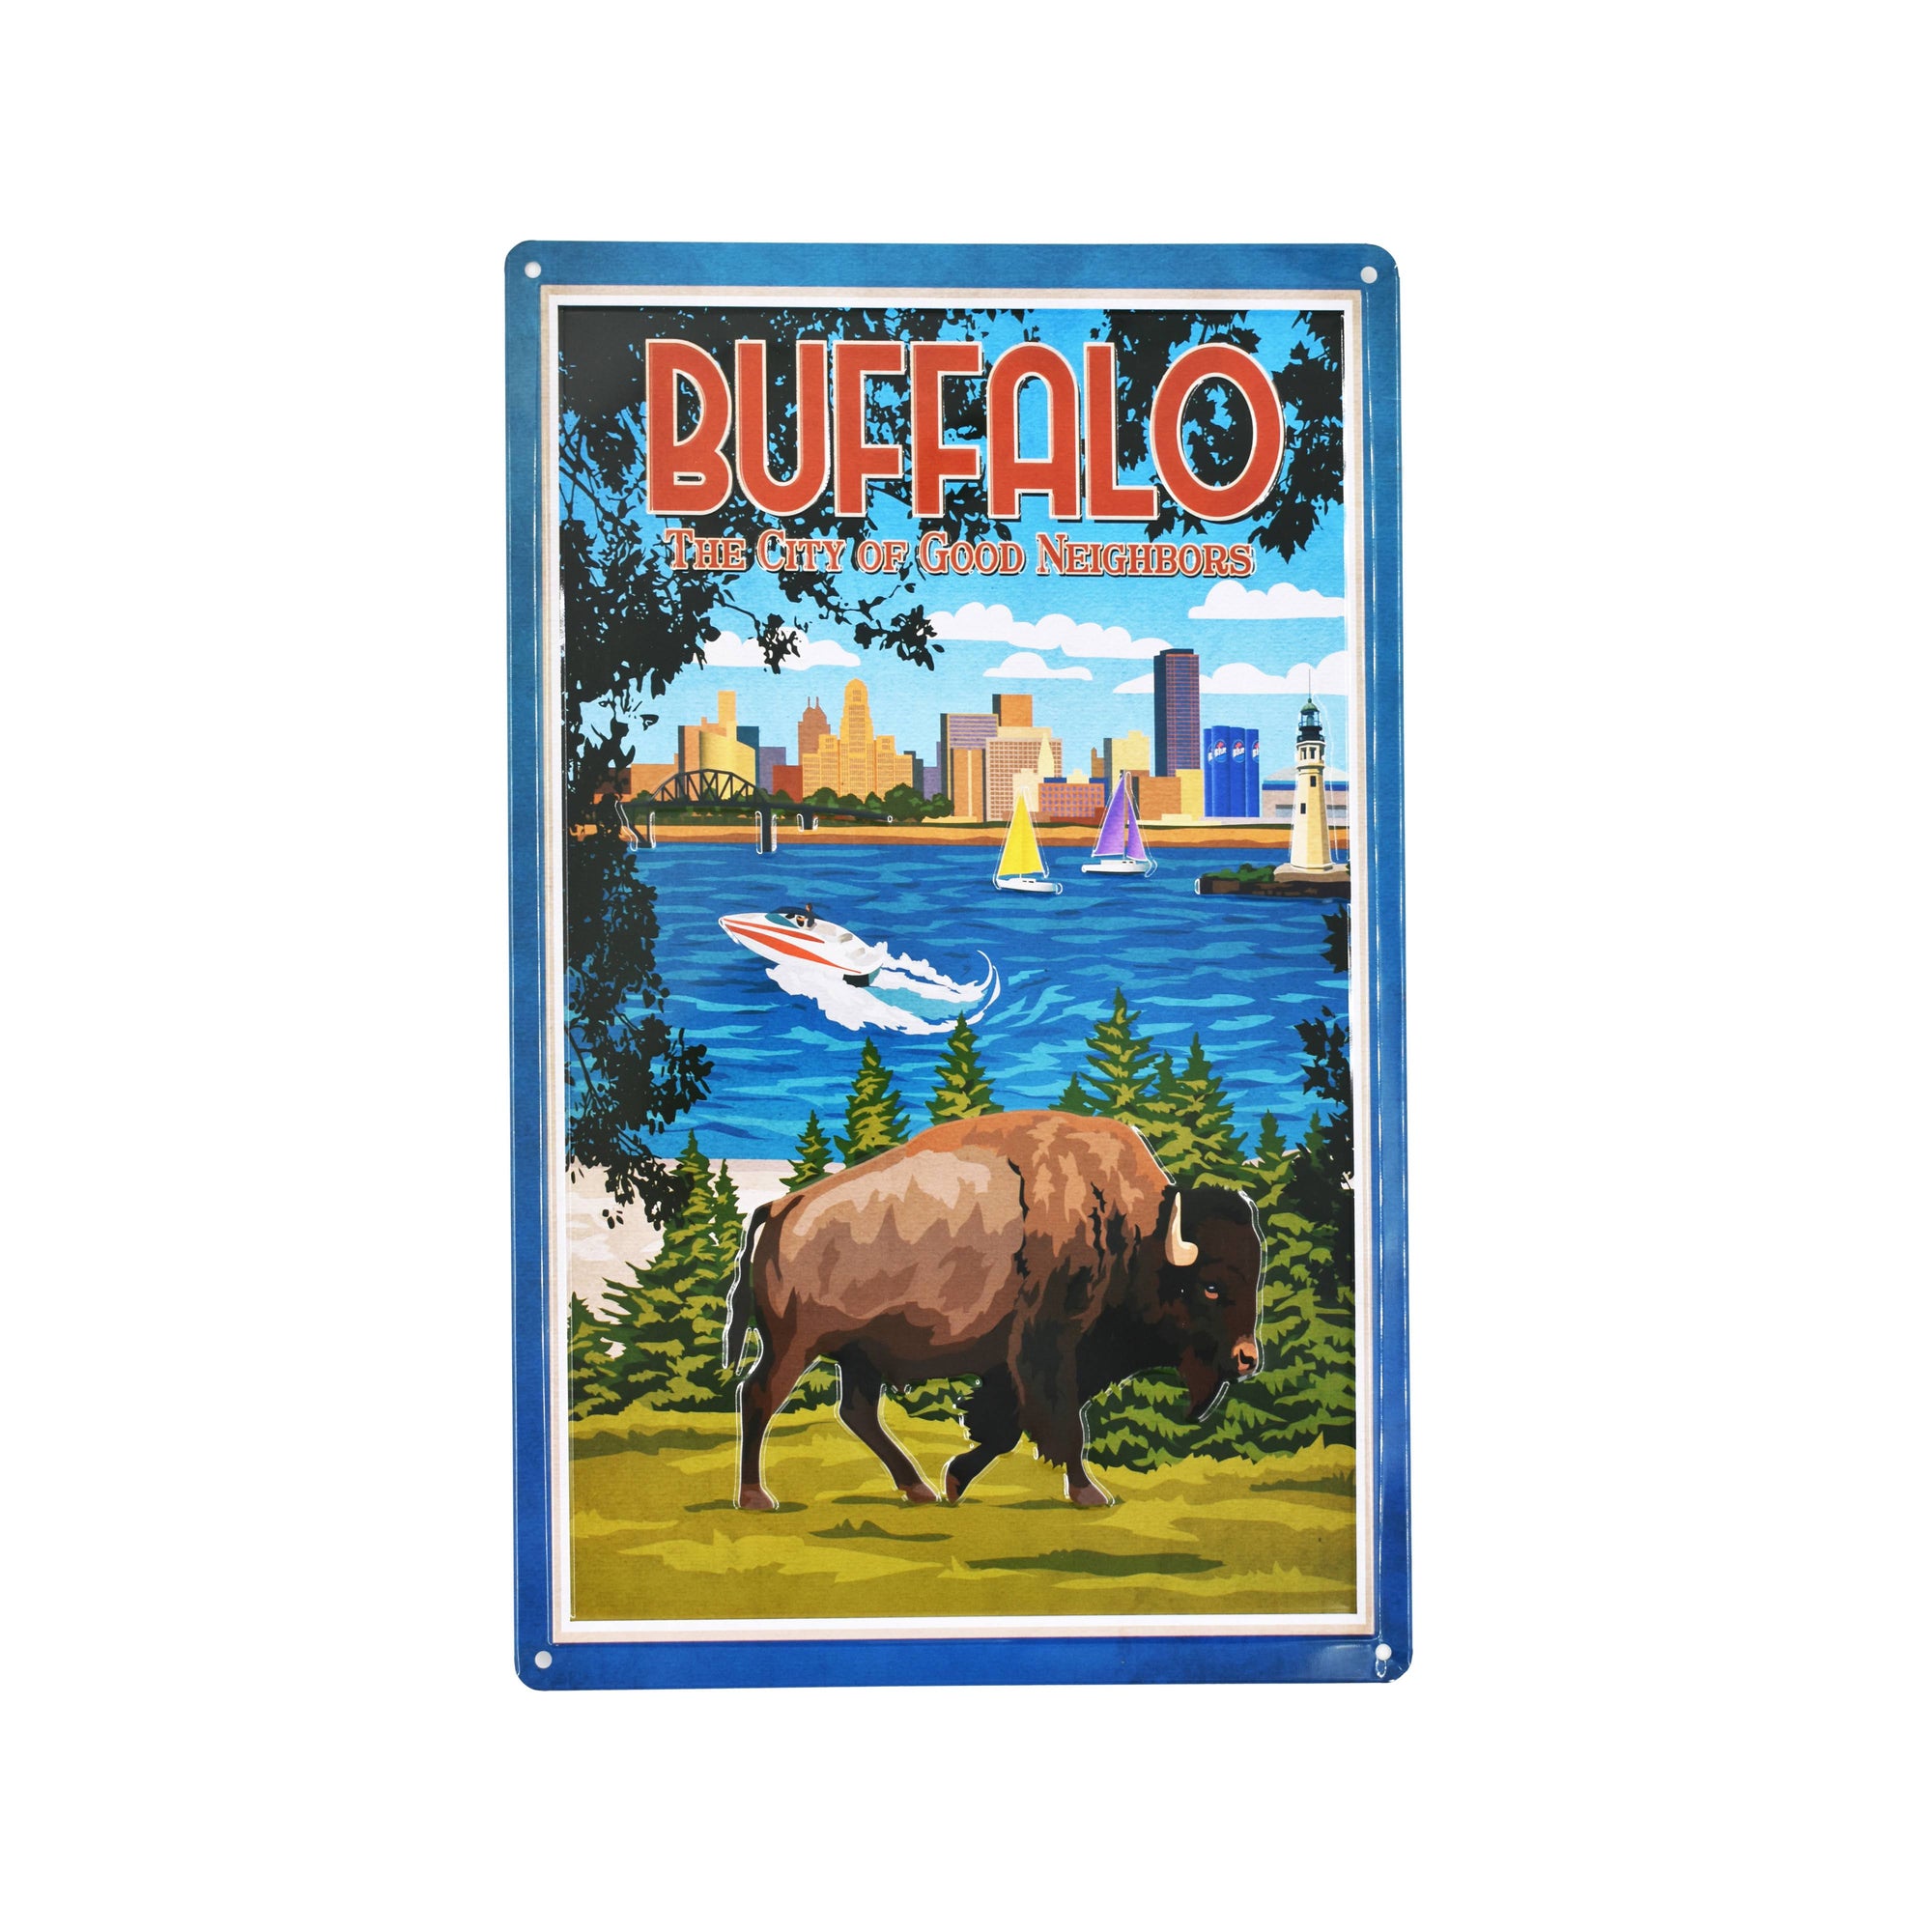 bflo store buffalo ny city of good neighbors tin poster wall art